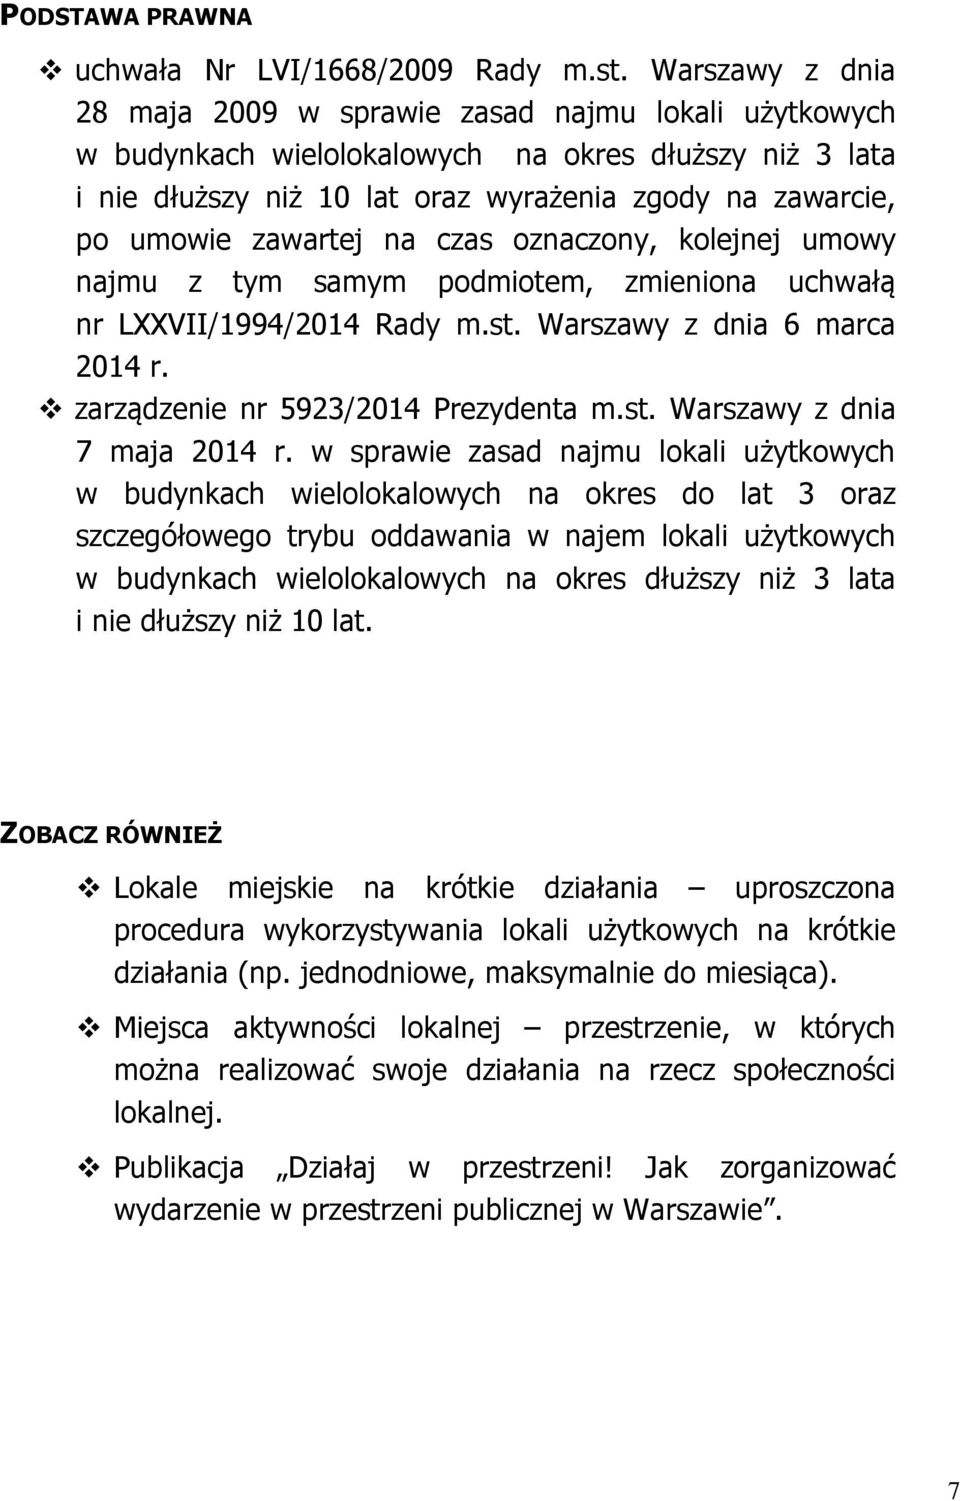 zawartej na czas oznaczony, kolejnej umowy najmu z tym samym podmiotem, zmieniona uchwałą nr LXXVII/1994/2014 Rady m.st. Warszawy z dnia 6 marca 2014 r. zarządzenie nr 5923/2014 Prezydenta m.st. Warszawy z dnia 7 maja 2014 r.